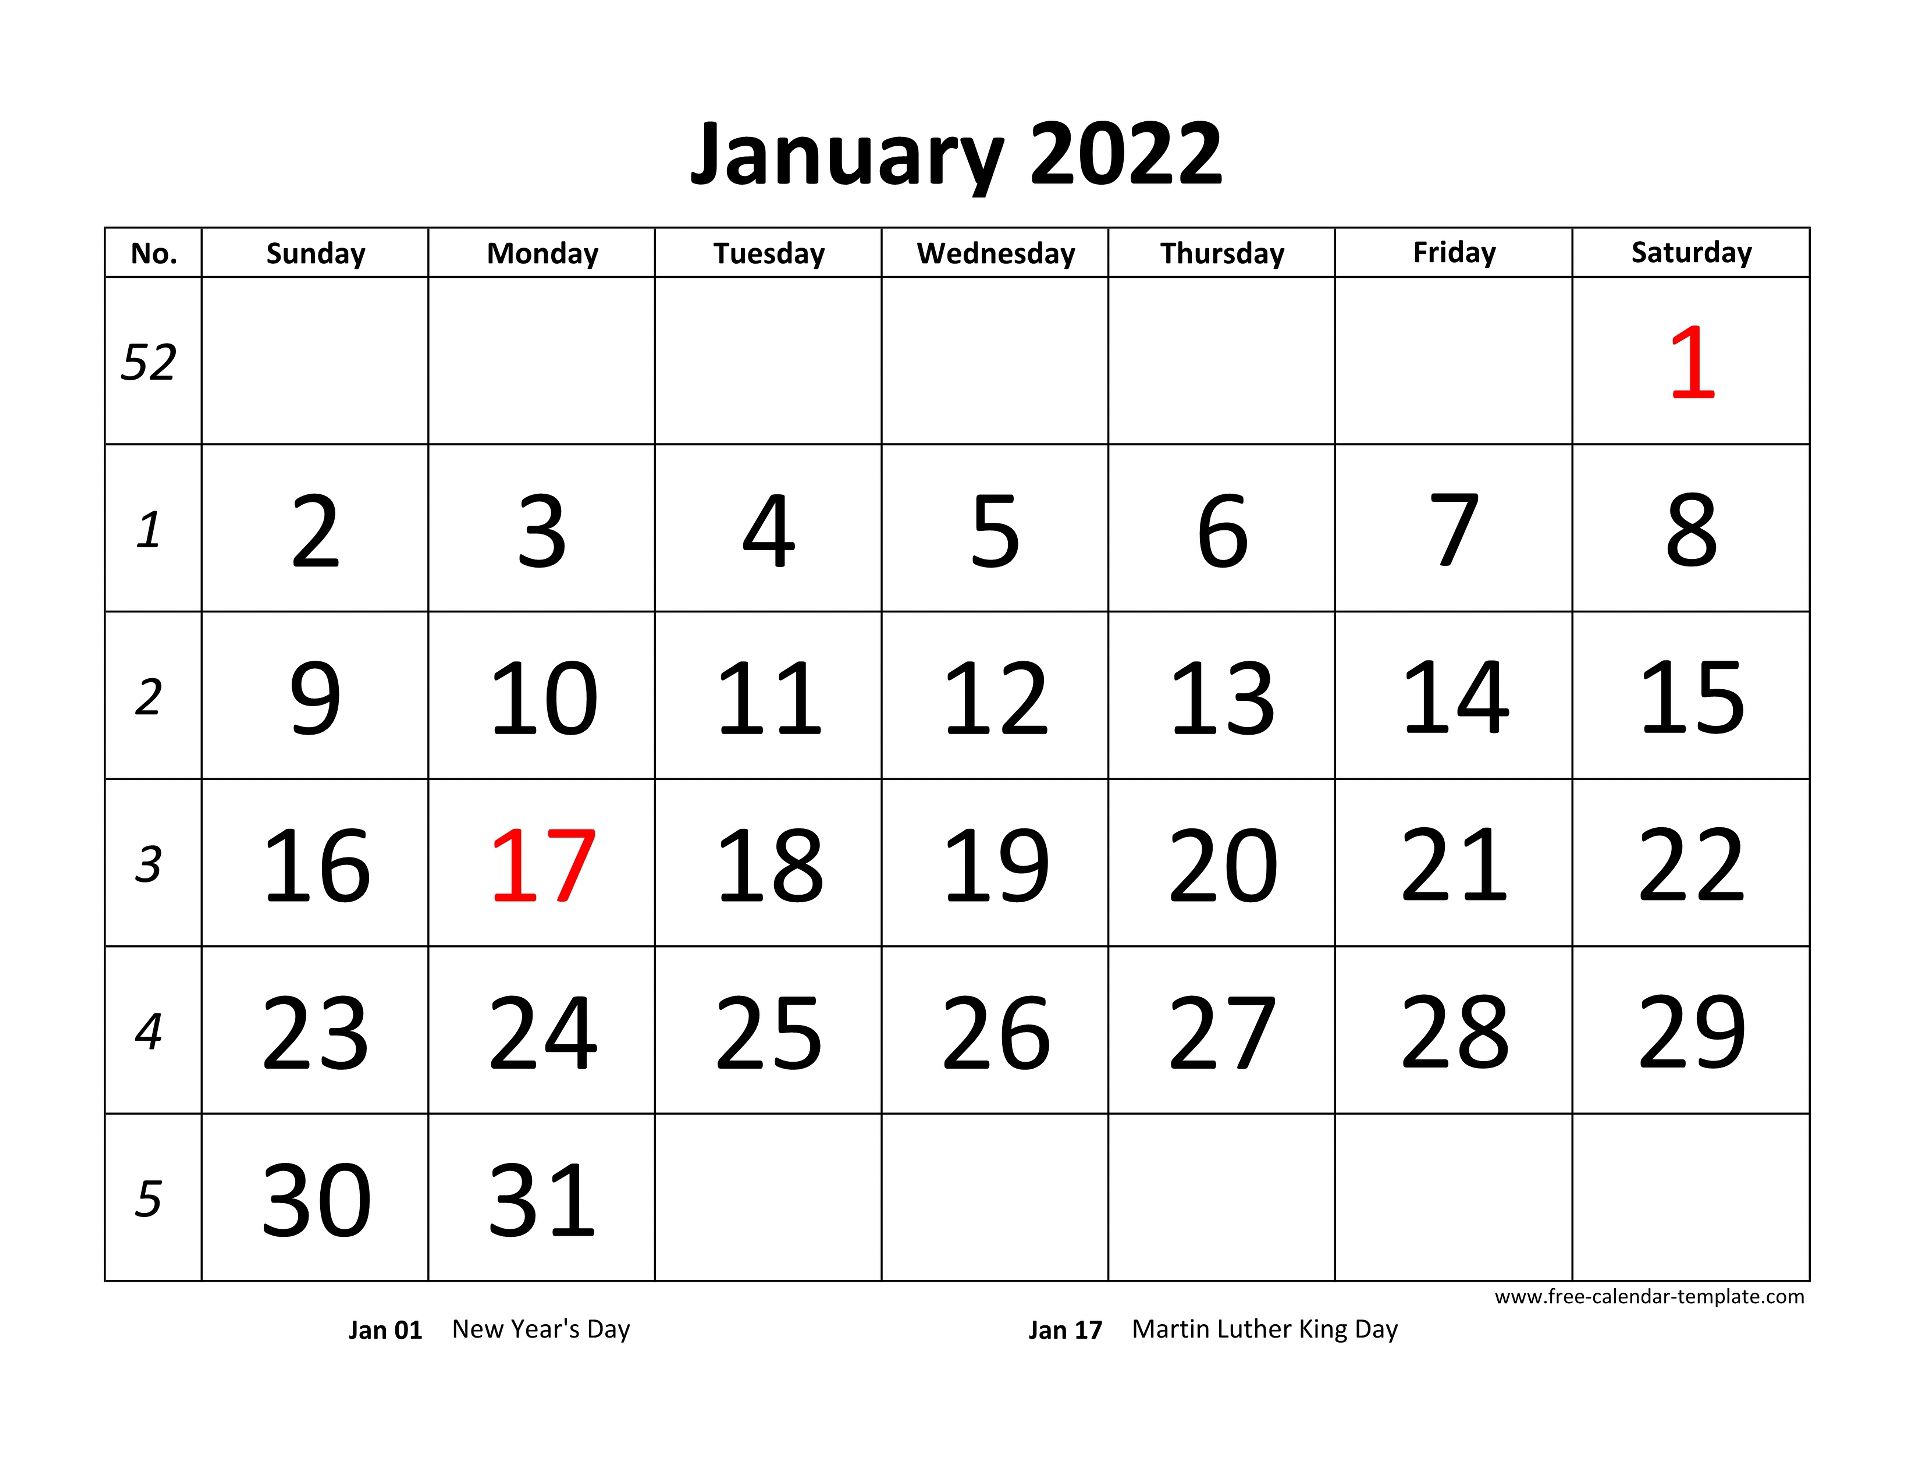 January 2022 Calendar Horizontal June 2022 Calendar